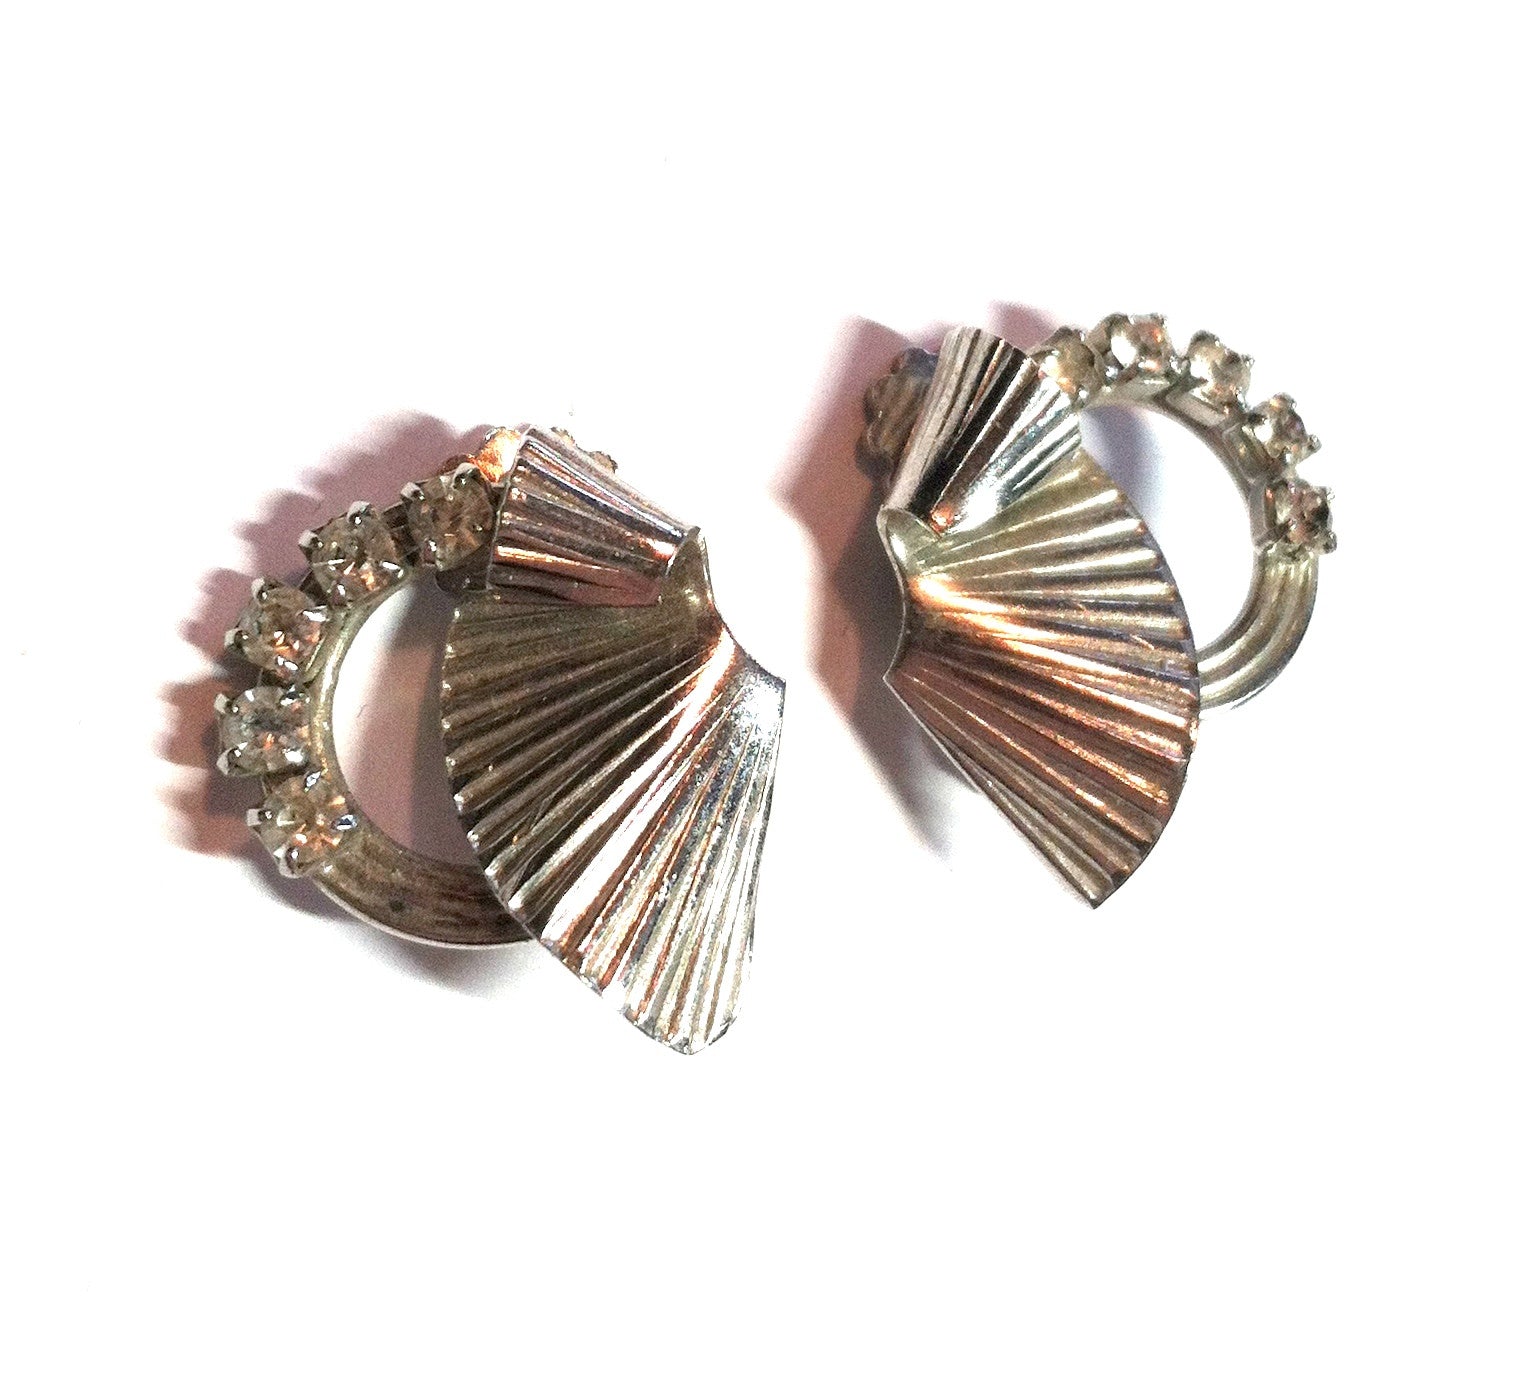 Swirling Fan Shaped Clip Earrings w/ Rhinestones circa 1940s Dorothea's Closet Vintage Jewelry 